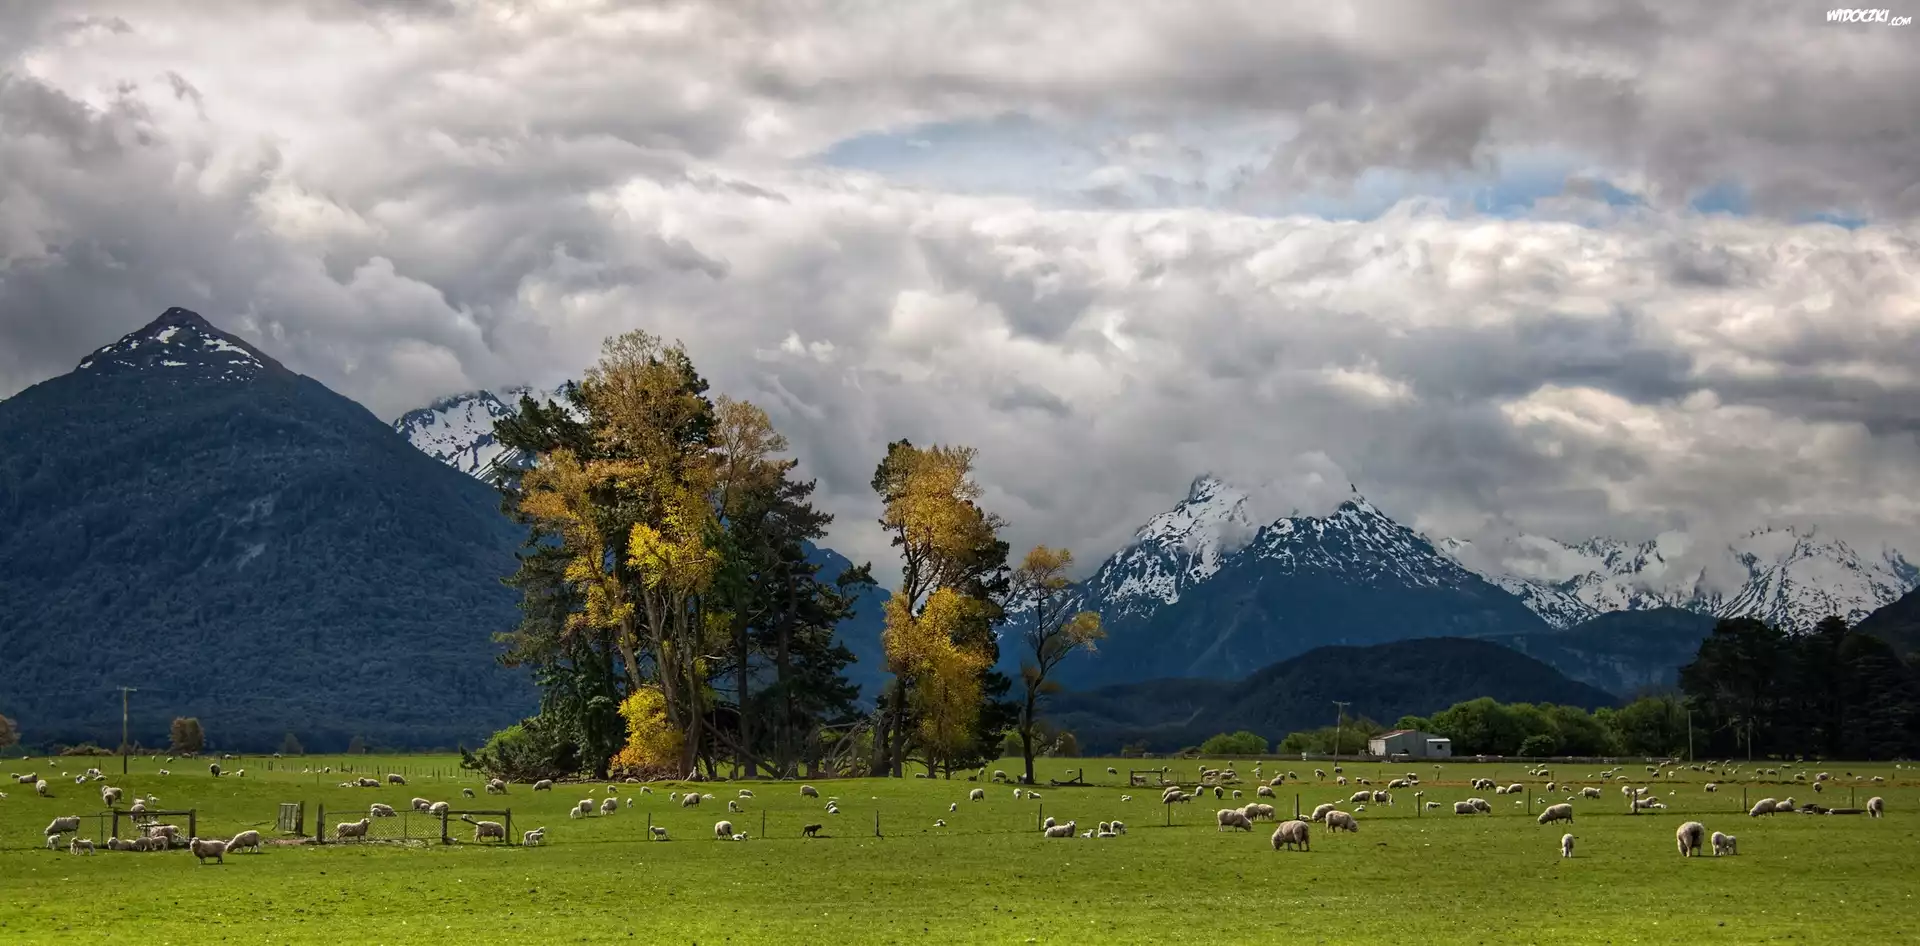 Pastwisko, Owce, Góry, Glenarchy, Nowa Zelandia, Trey Ratcliff